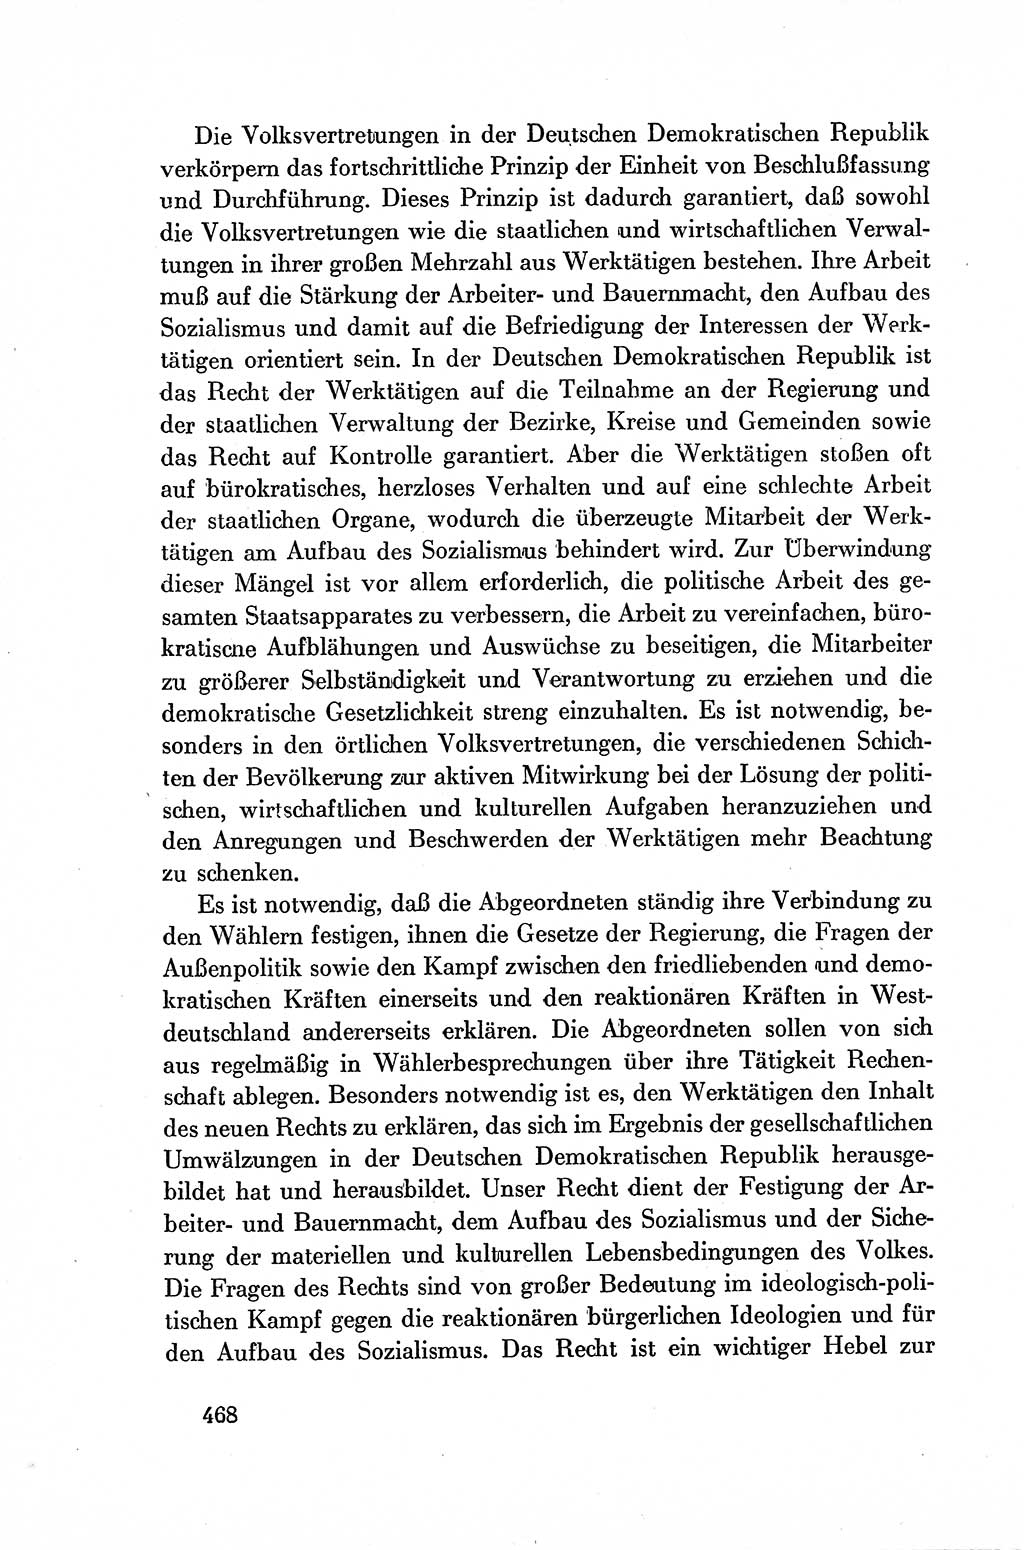 Dokumente der Sozialistischen Einheitspartei Deutschlands (SED) [Deutsche Demokratische Republik (DDR)] 1954-1955, Seite 468 (Dok. SED DDR 1954-1955, S. 468)